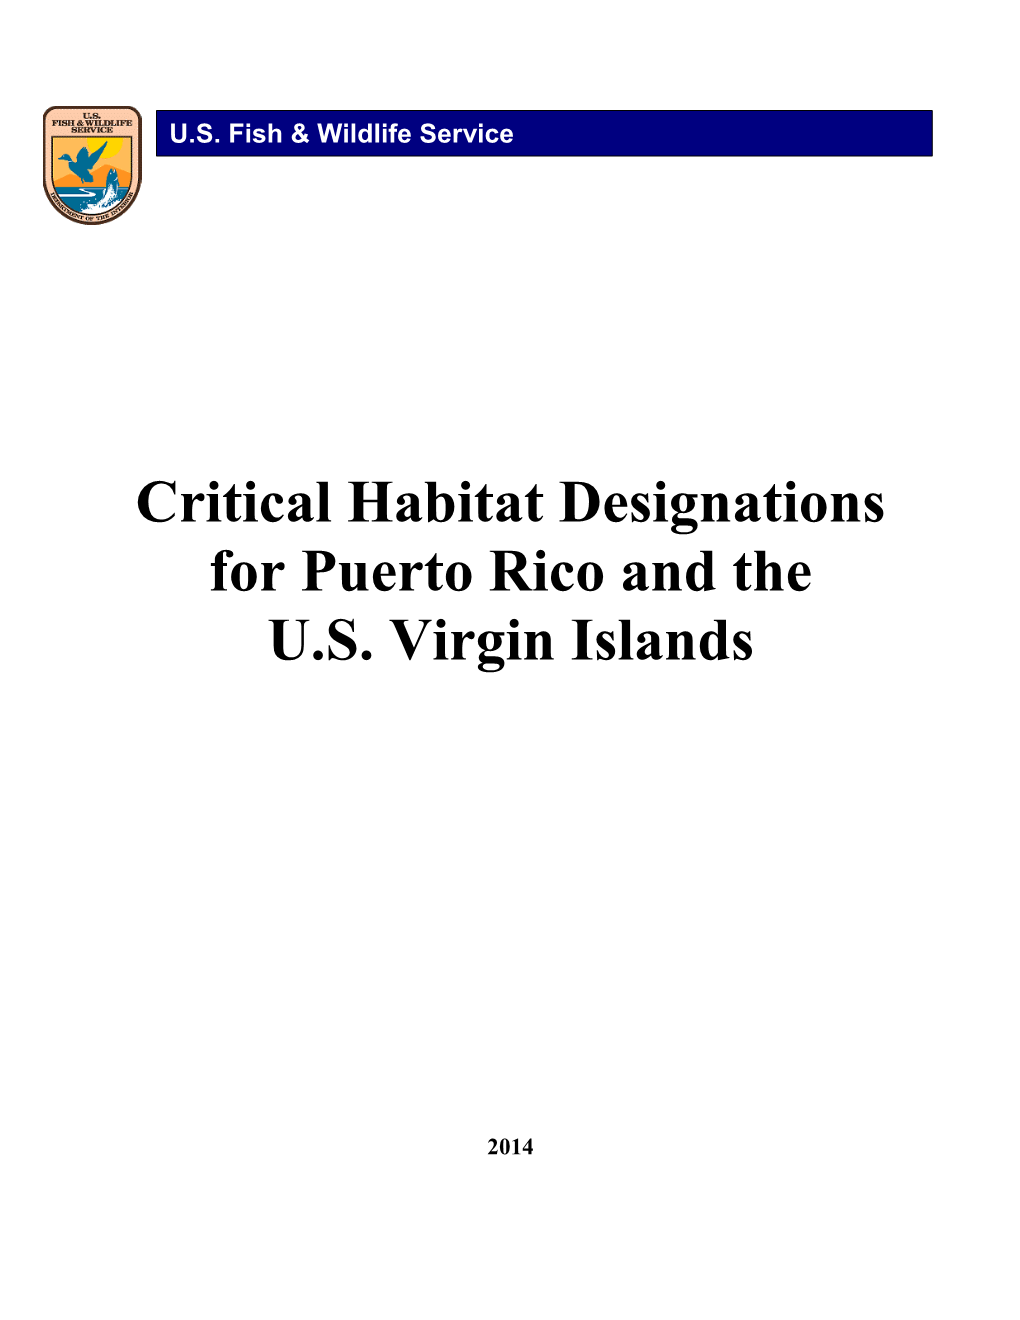 Habitat Designations for Puerto Rico and the U.S